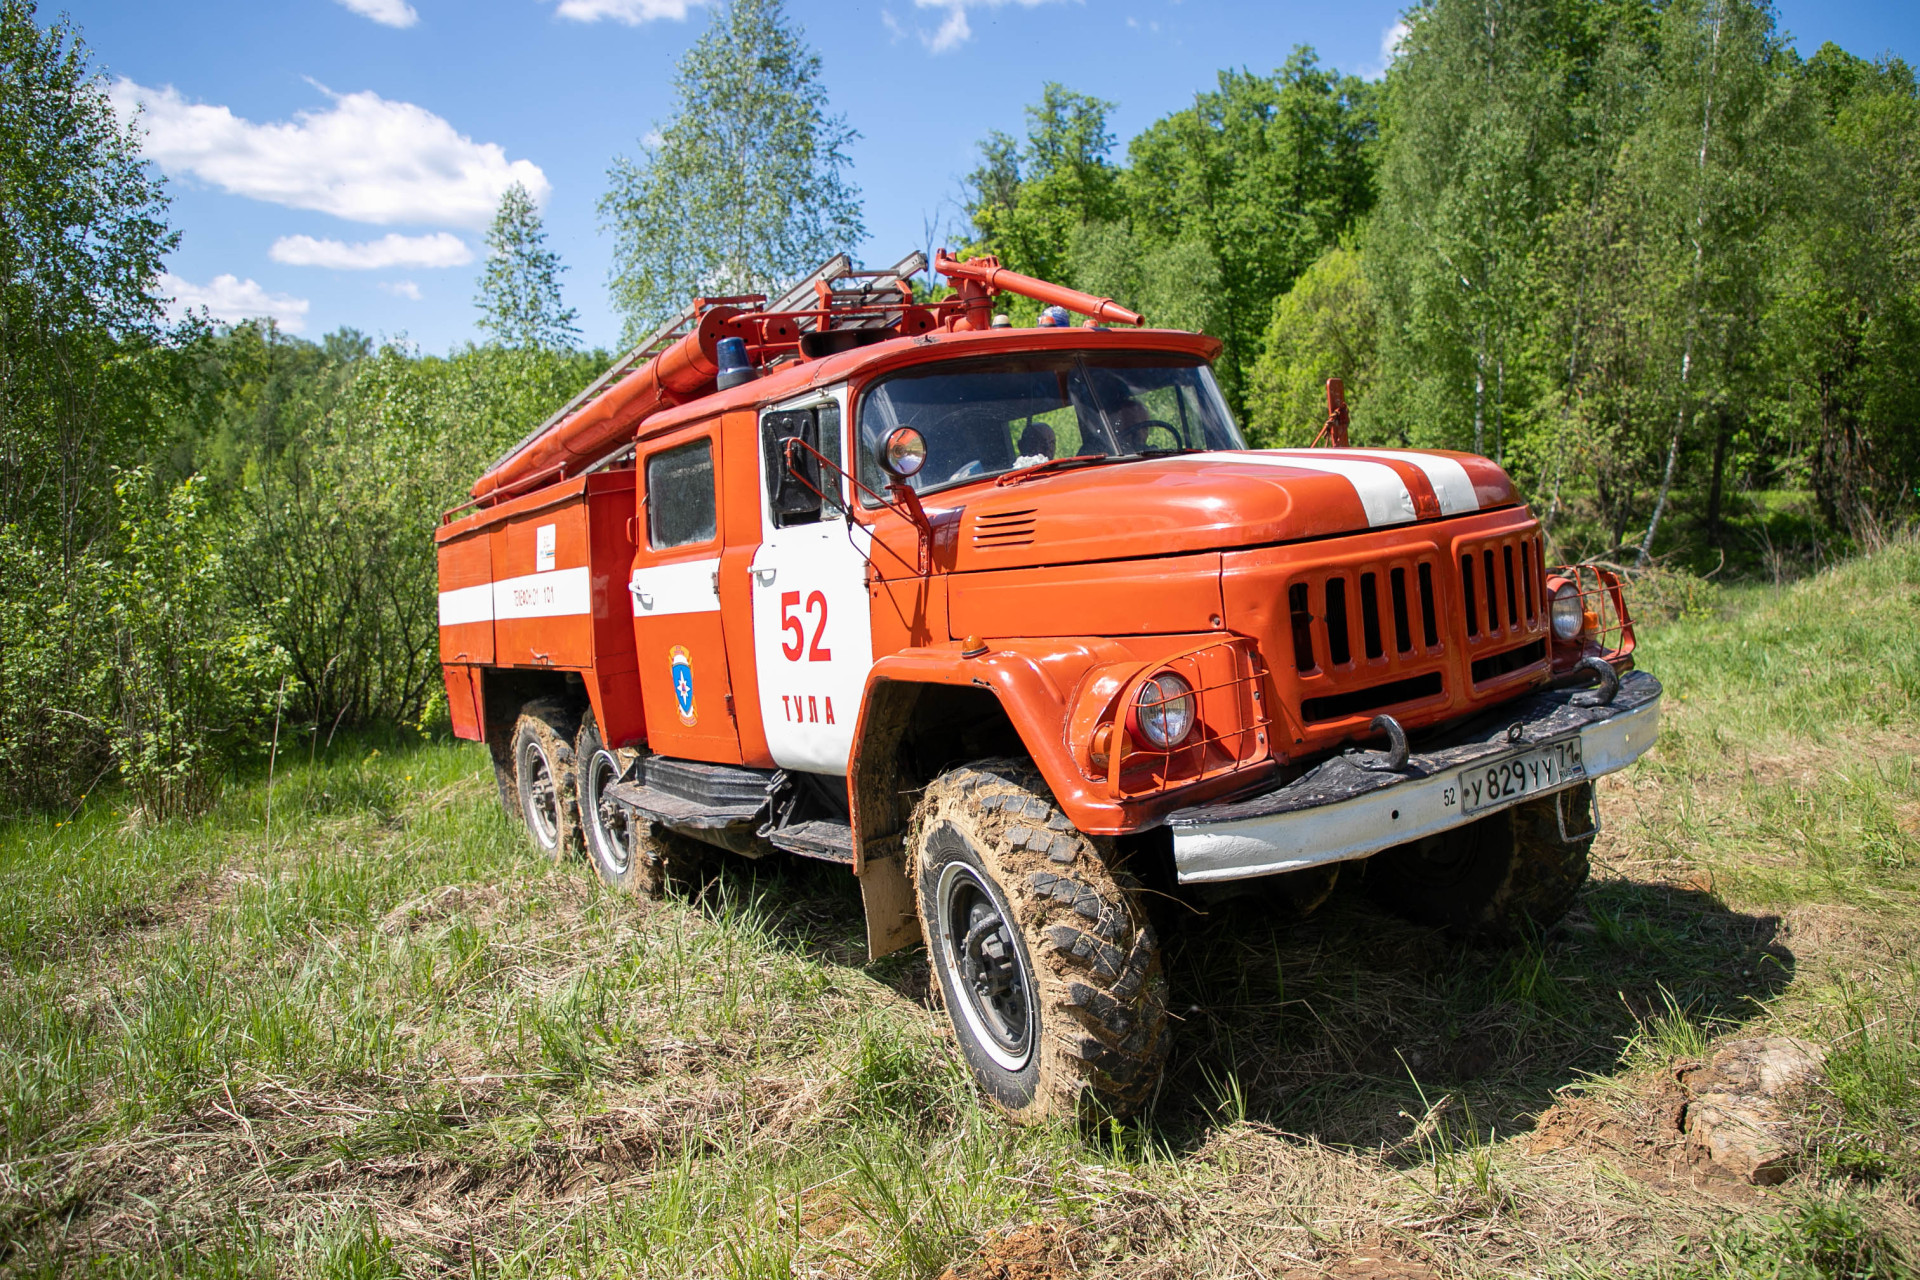 Пятый класс пожарной опасности сохранится в Ефремове 30 и 31 июля